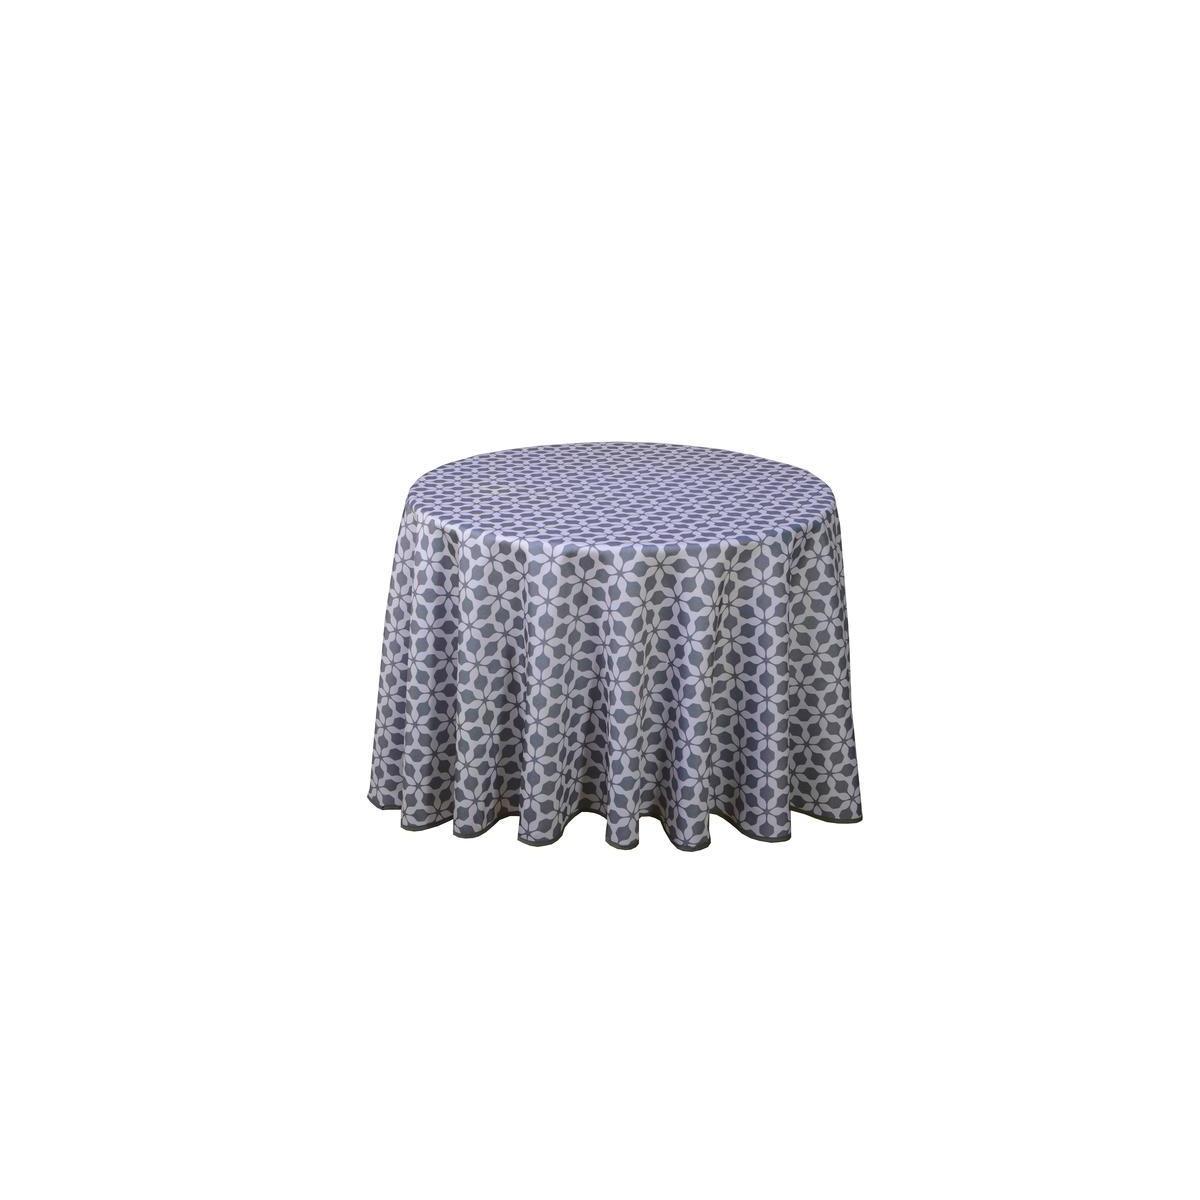 Nappe ronde imprimée à motifs cristallins - ø 180 cm - Gris, bleu